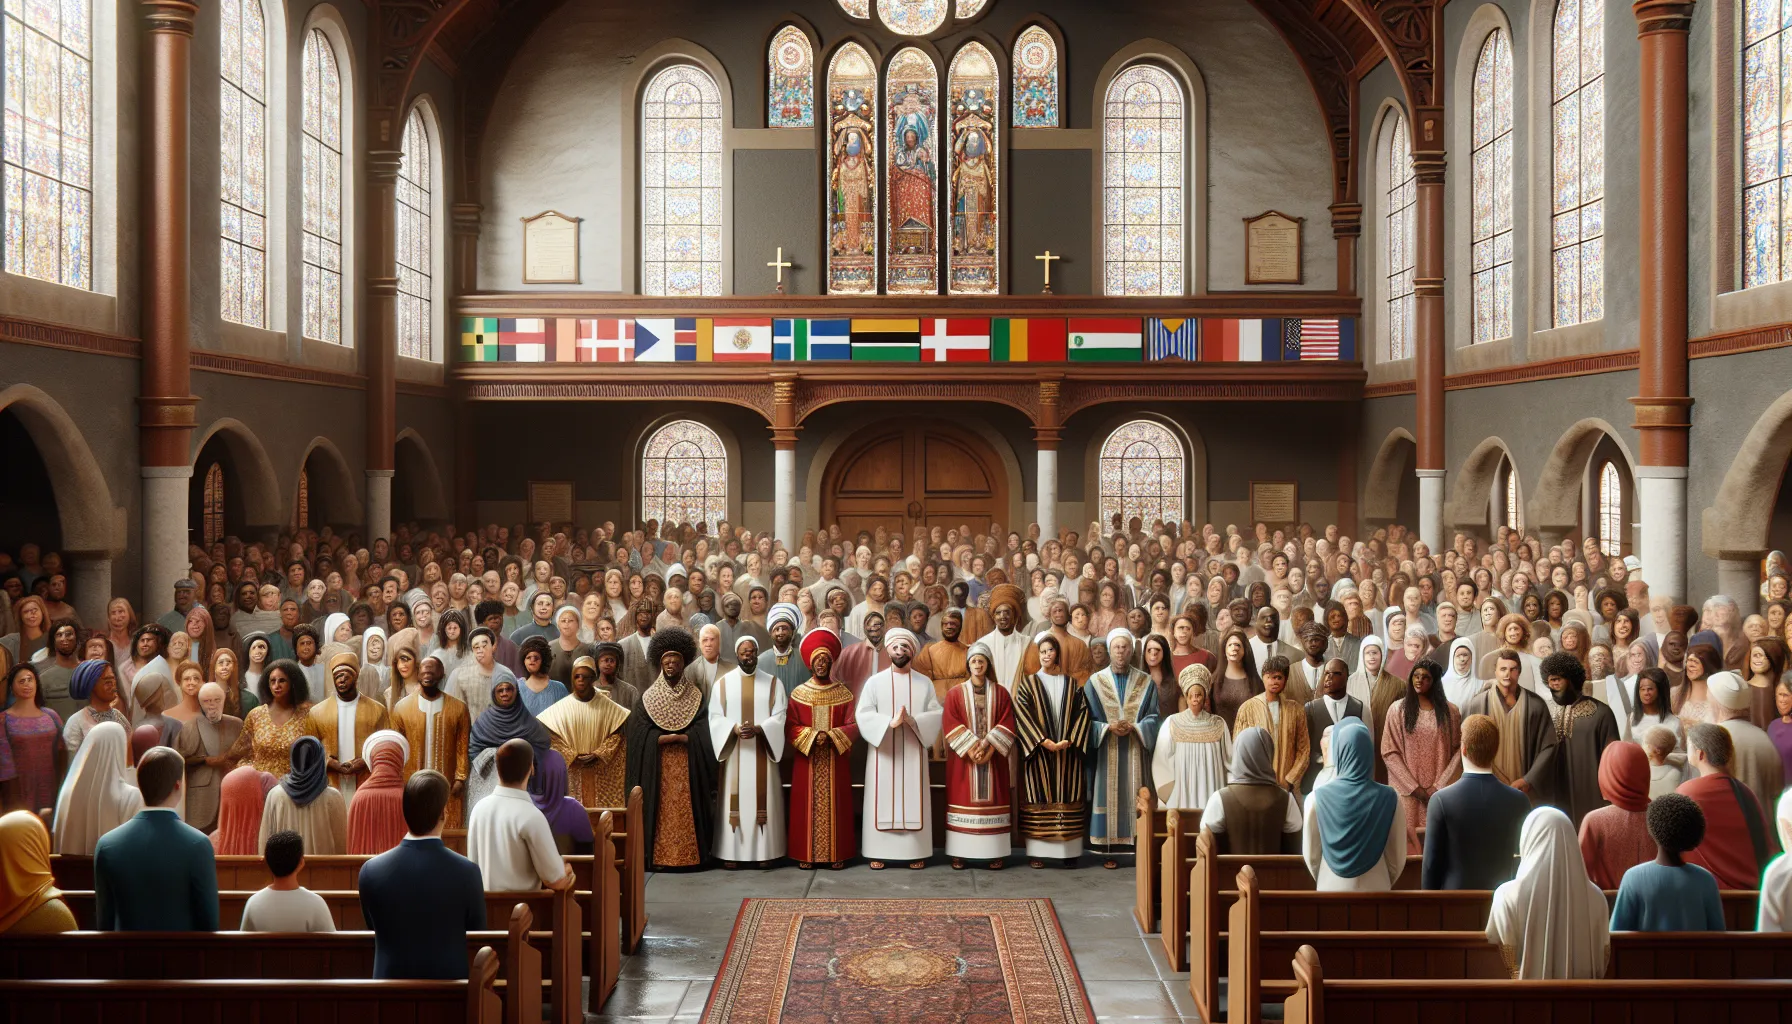 Imagen de una iglesia con personas de diferentes culturas y estilos de vestimenta, representando la diversidad de denominaciones cristianas.